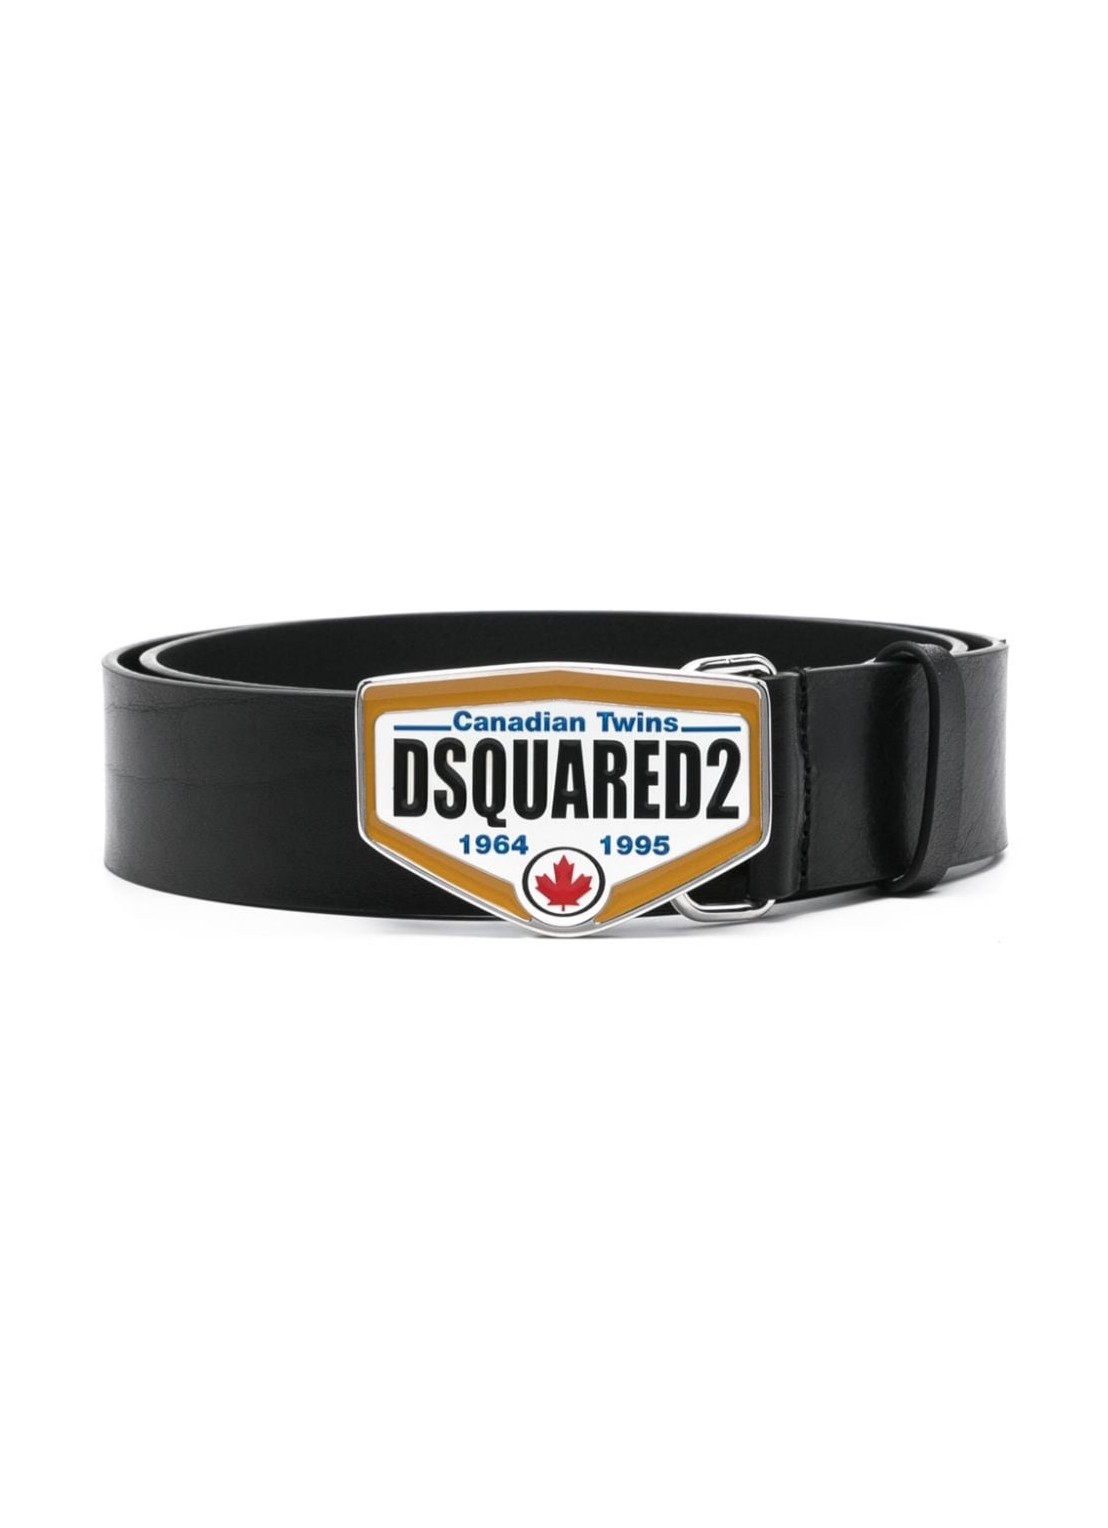 Cinturon dsquared belt man dsquared2 logo plaque belt bem056612900001 2124 talla 95
 